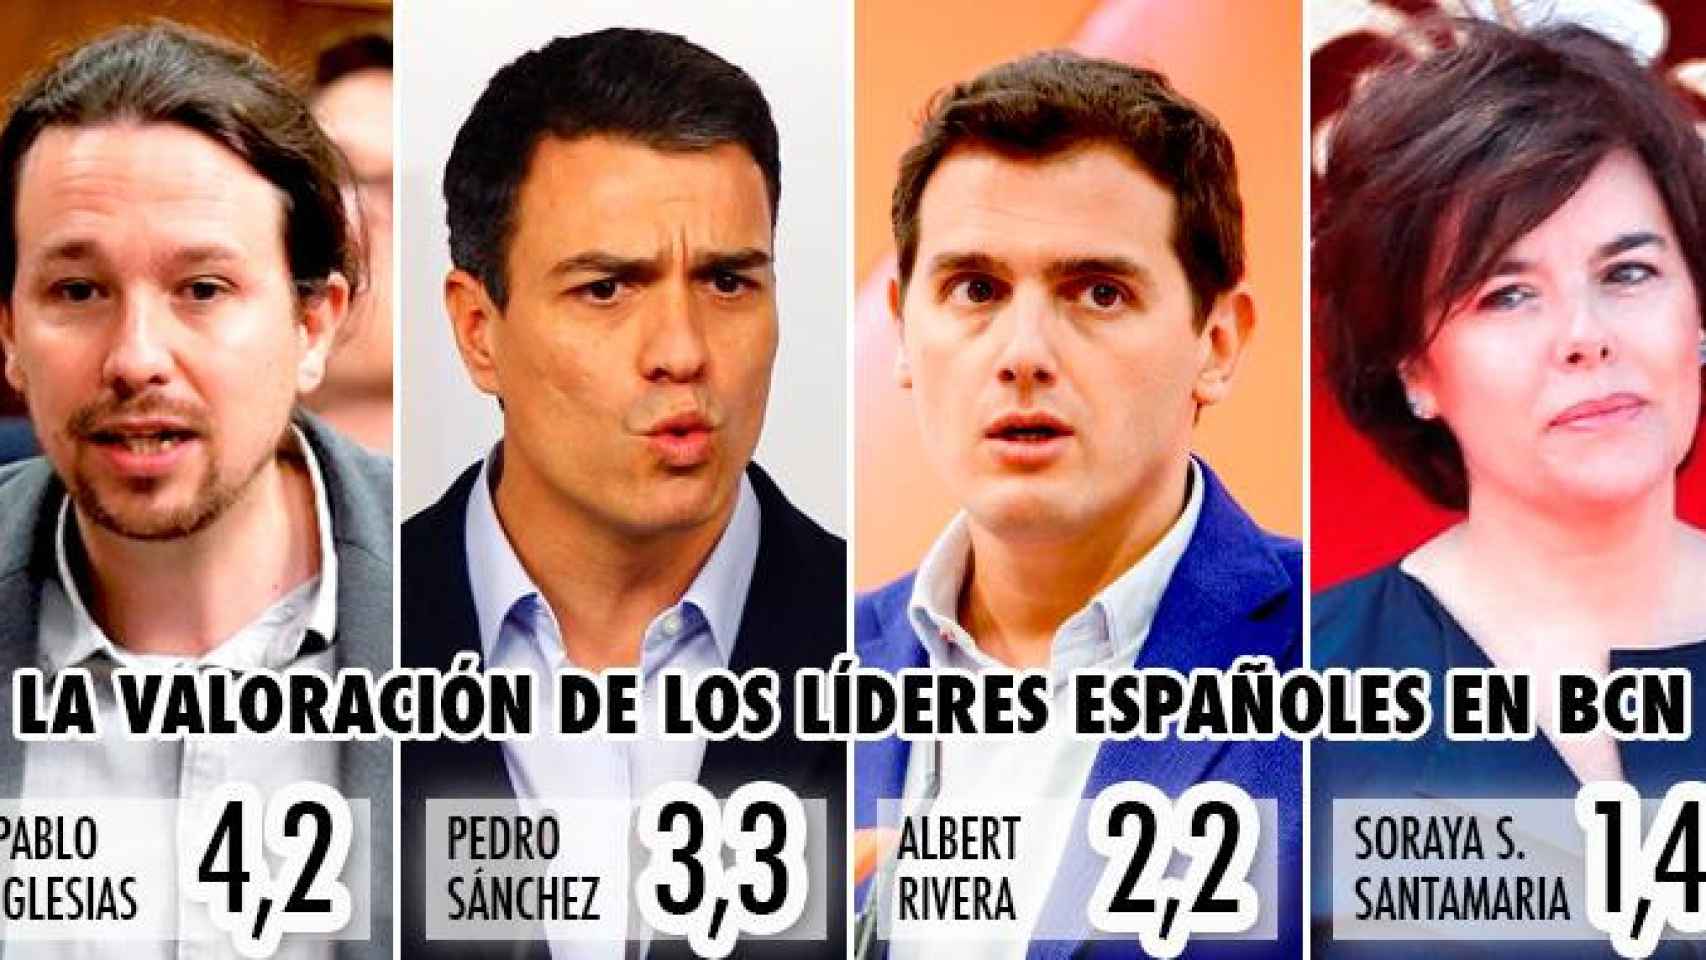 La valoración de los líderes españoles en Barcelona (0-10) / CG